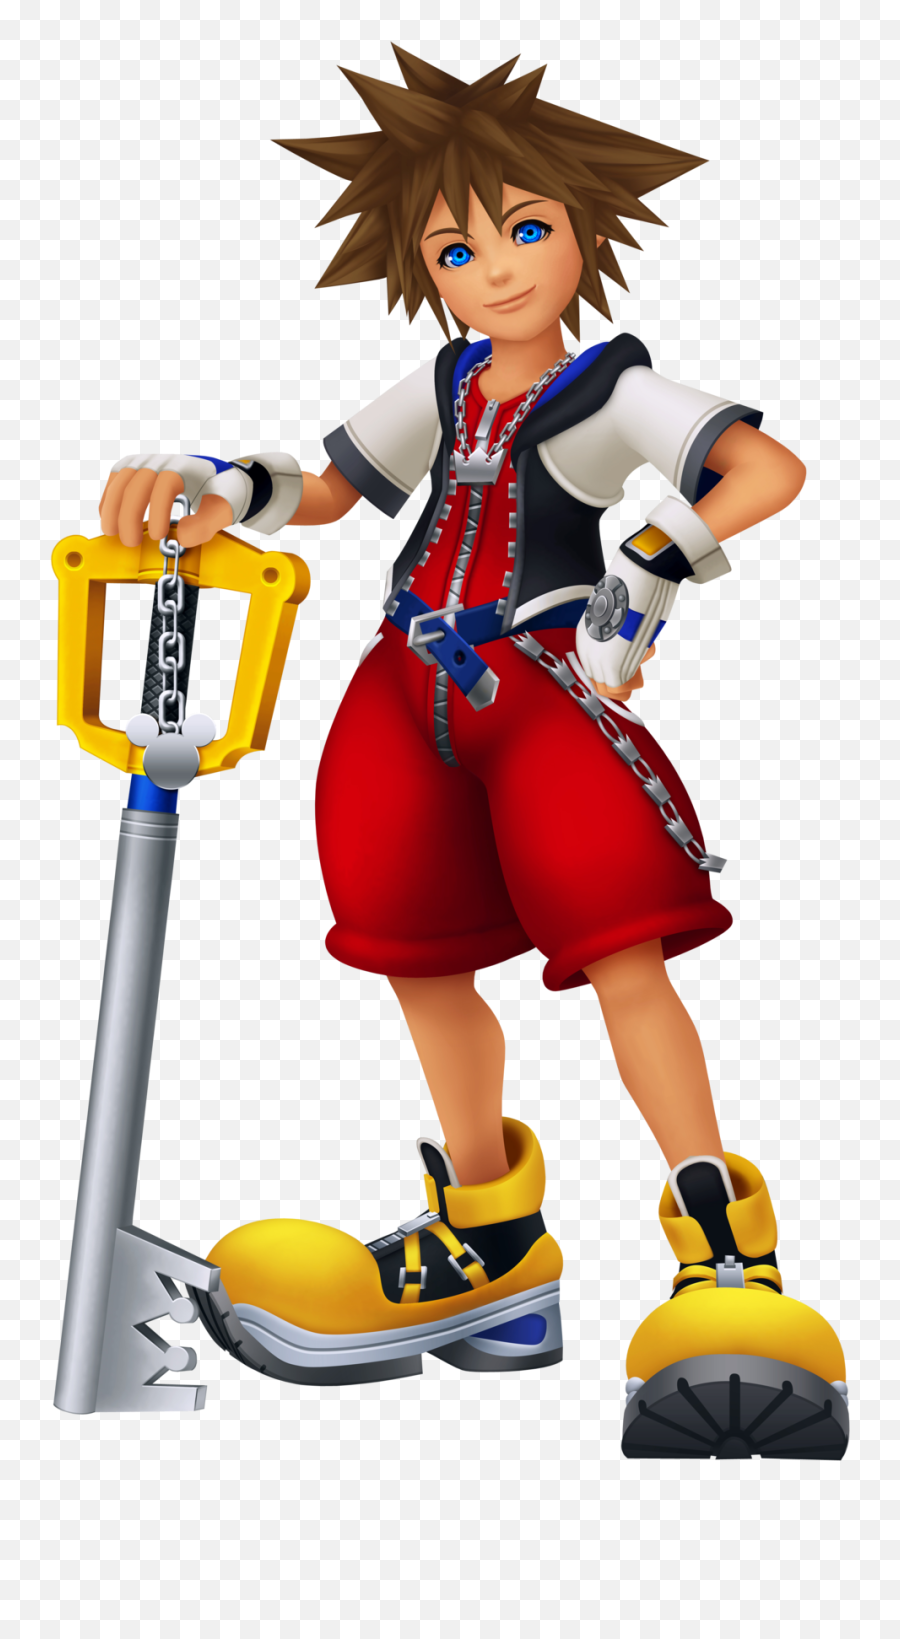 Data - Sora Kingdom Hearts Png,Roxas Kingdom Hearts Icon